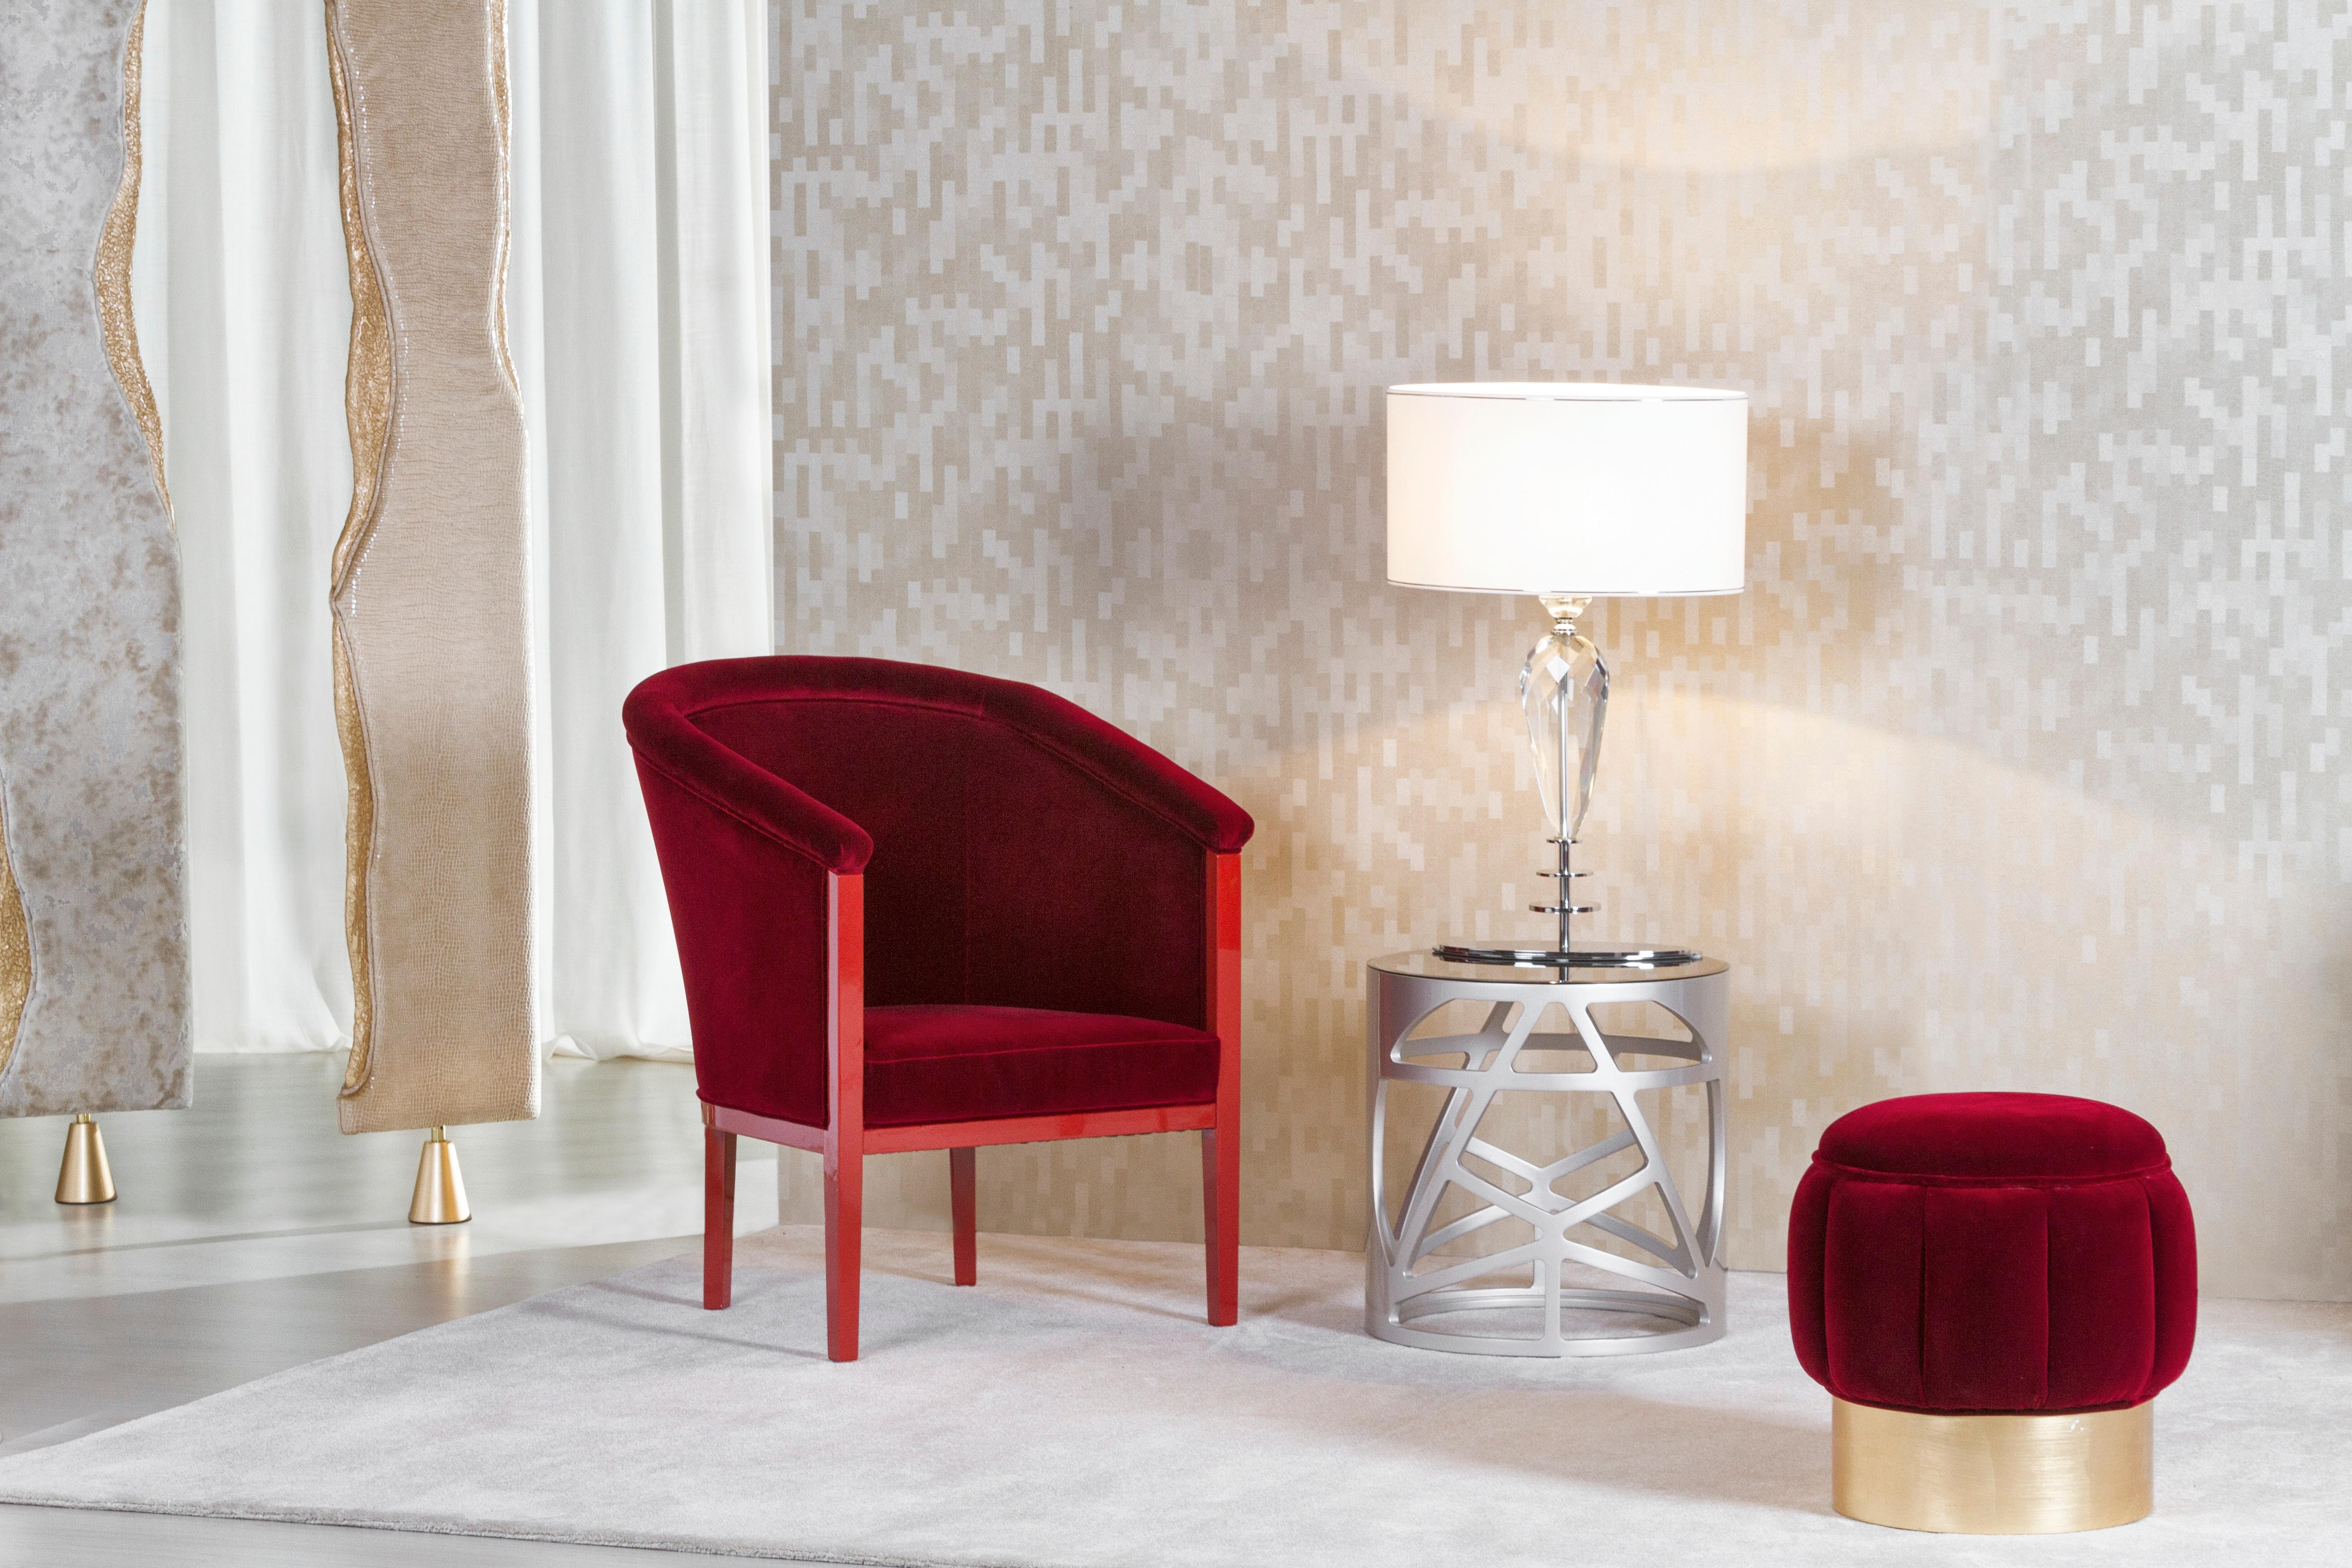 Sessel Scarlet, Collection'S Contemporary, handgefertigt in Portugal - Europa von Greenapple.

Scarlet gibt dem traditionellen Sessel eine moderne Wendung.
Die prächtige Polsterung aus rotem Samt von Dedar geht mühelos mit der bequemen Rückenlehne